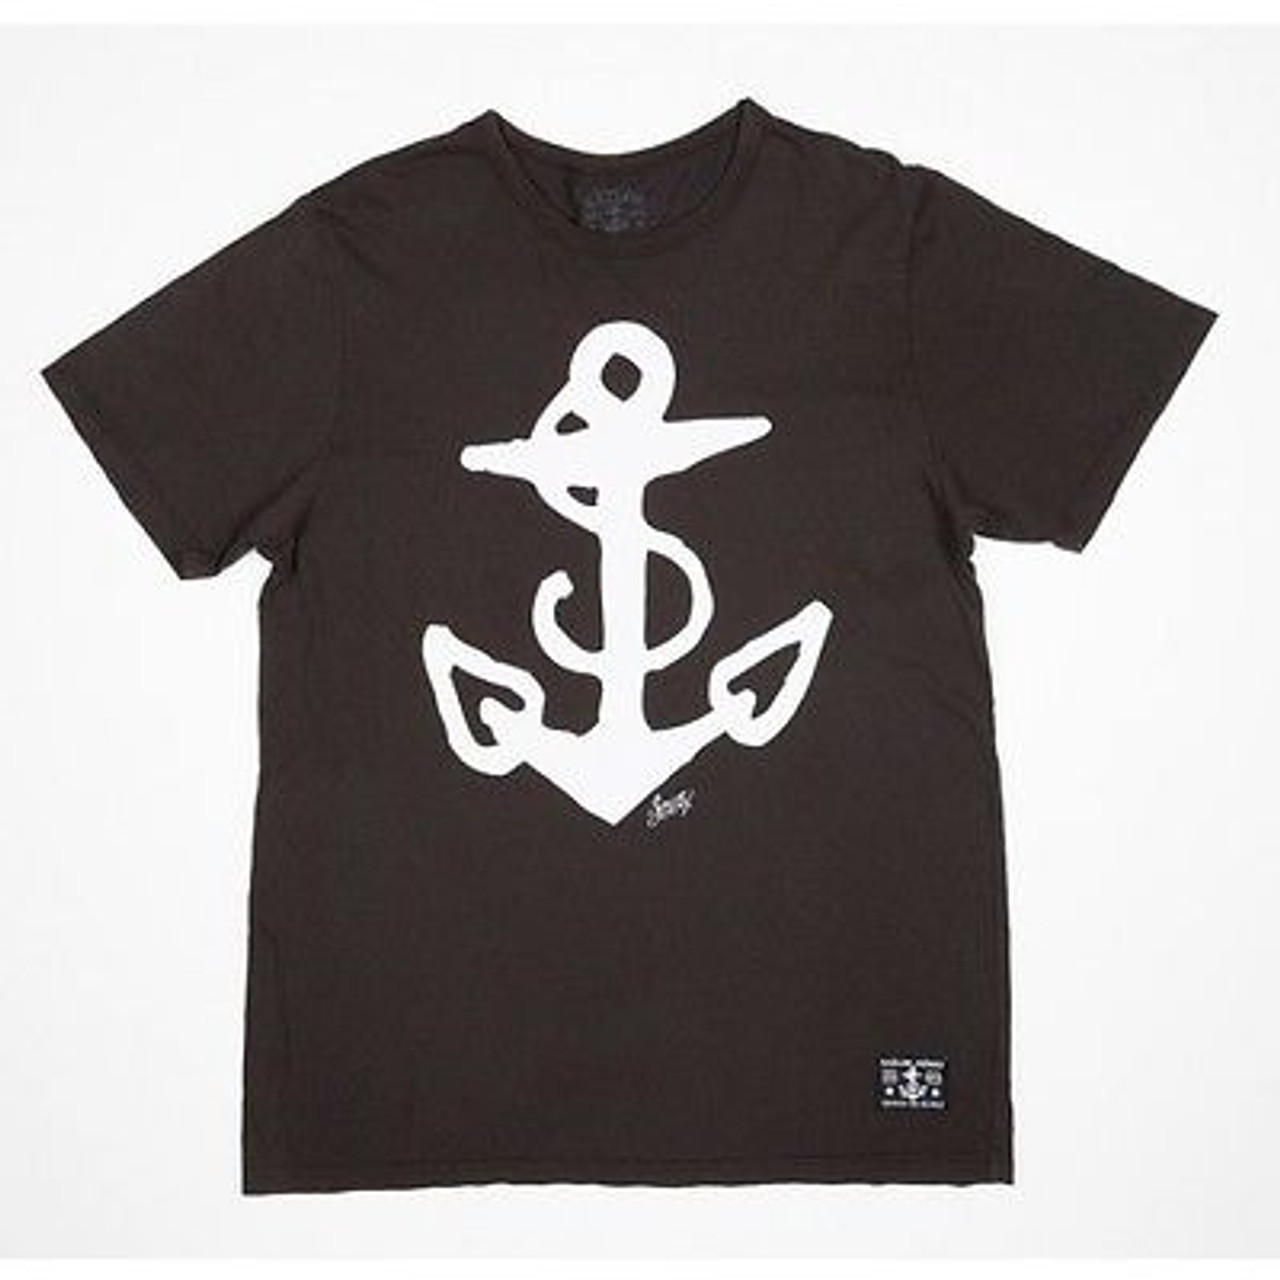 Teoretisk Narkoman Bourgogne Sailor Jerry Anchor Logo Nautical Navy Tattoo Punk Rock Biker T Tee Shirt  S-2XL - Fearless Apparel